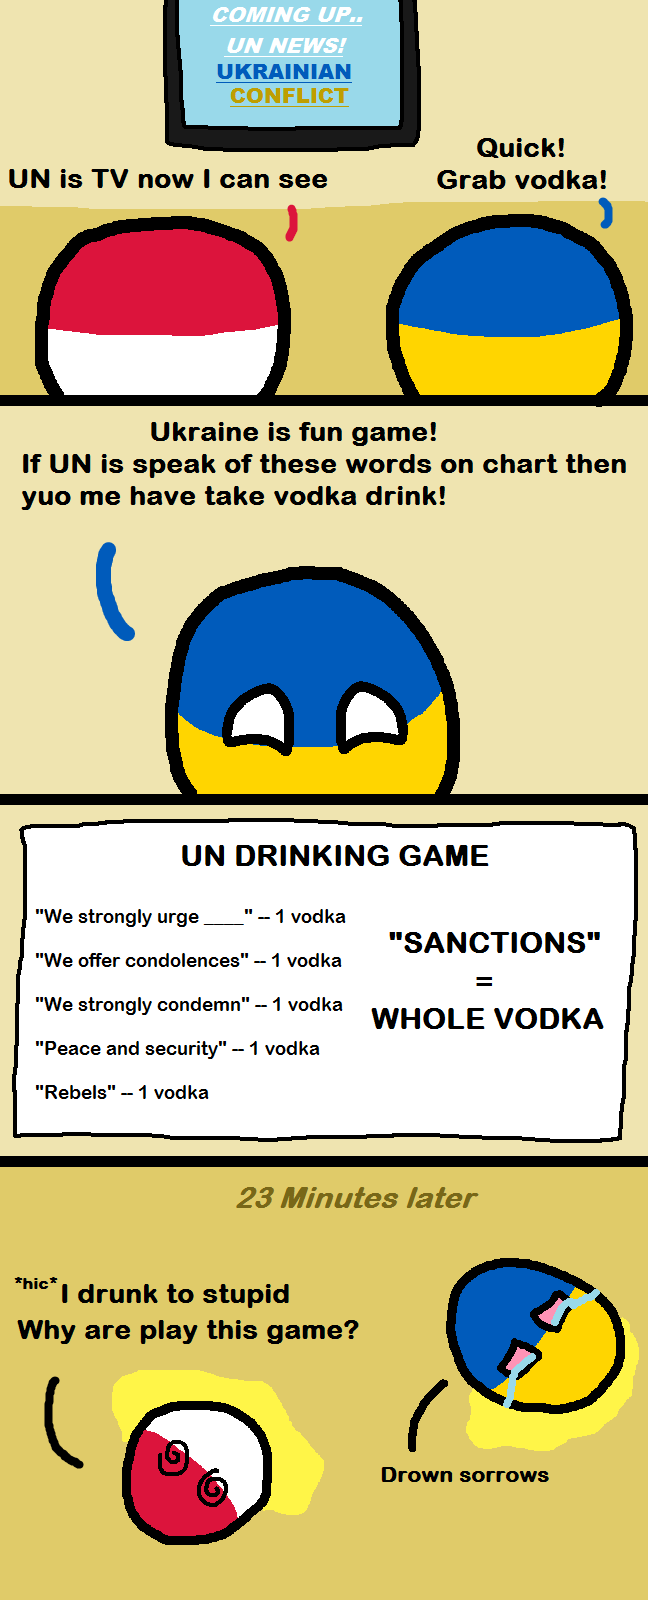 Drinking Game